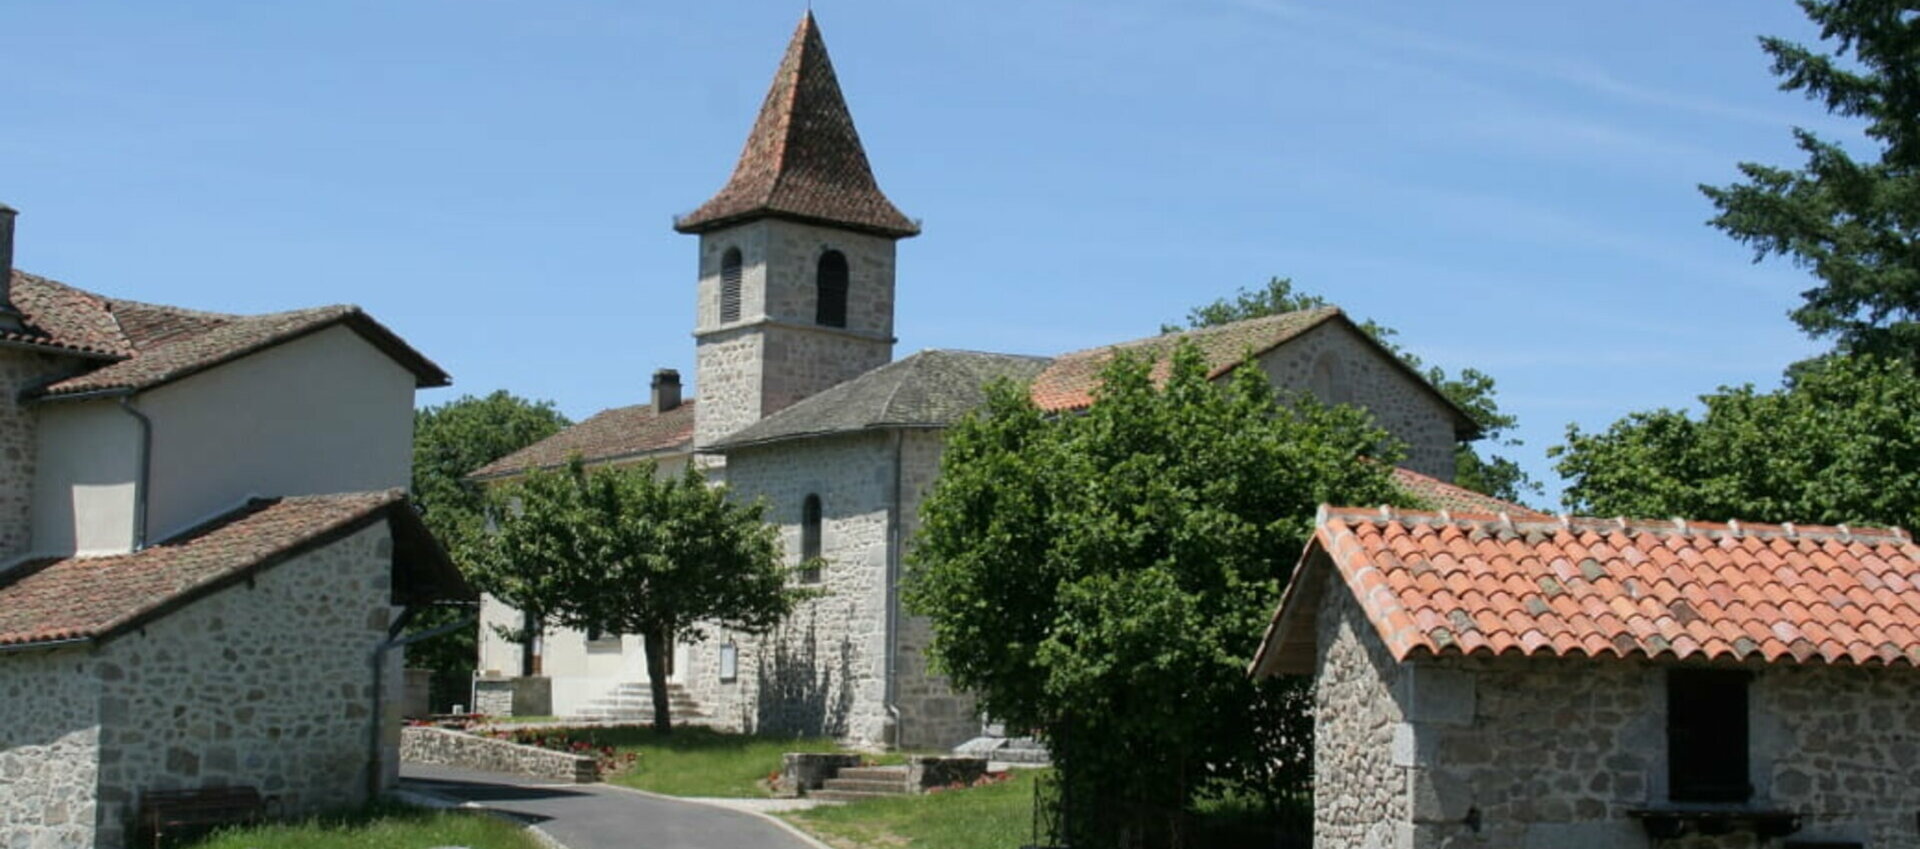 Bienvenue sur le site officiel de la commune de La Ségalassière (15) Cantal